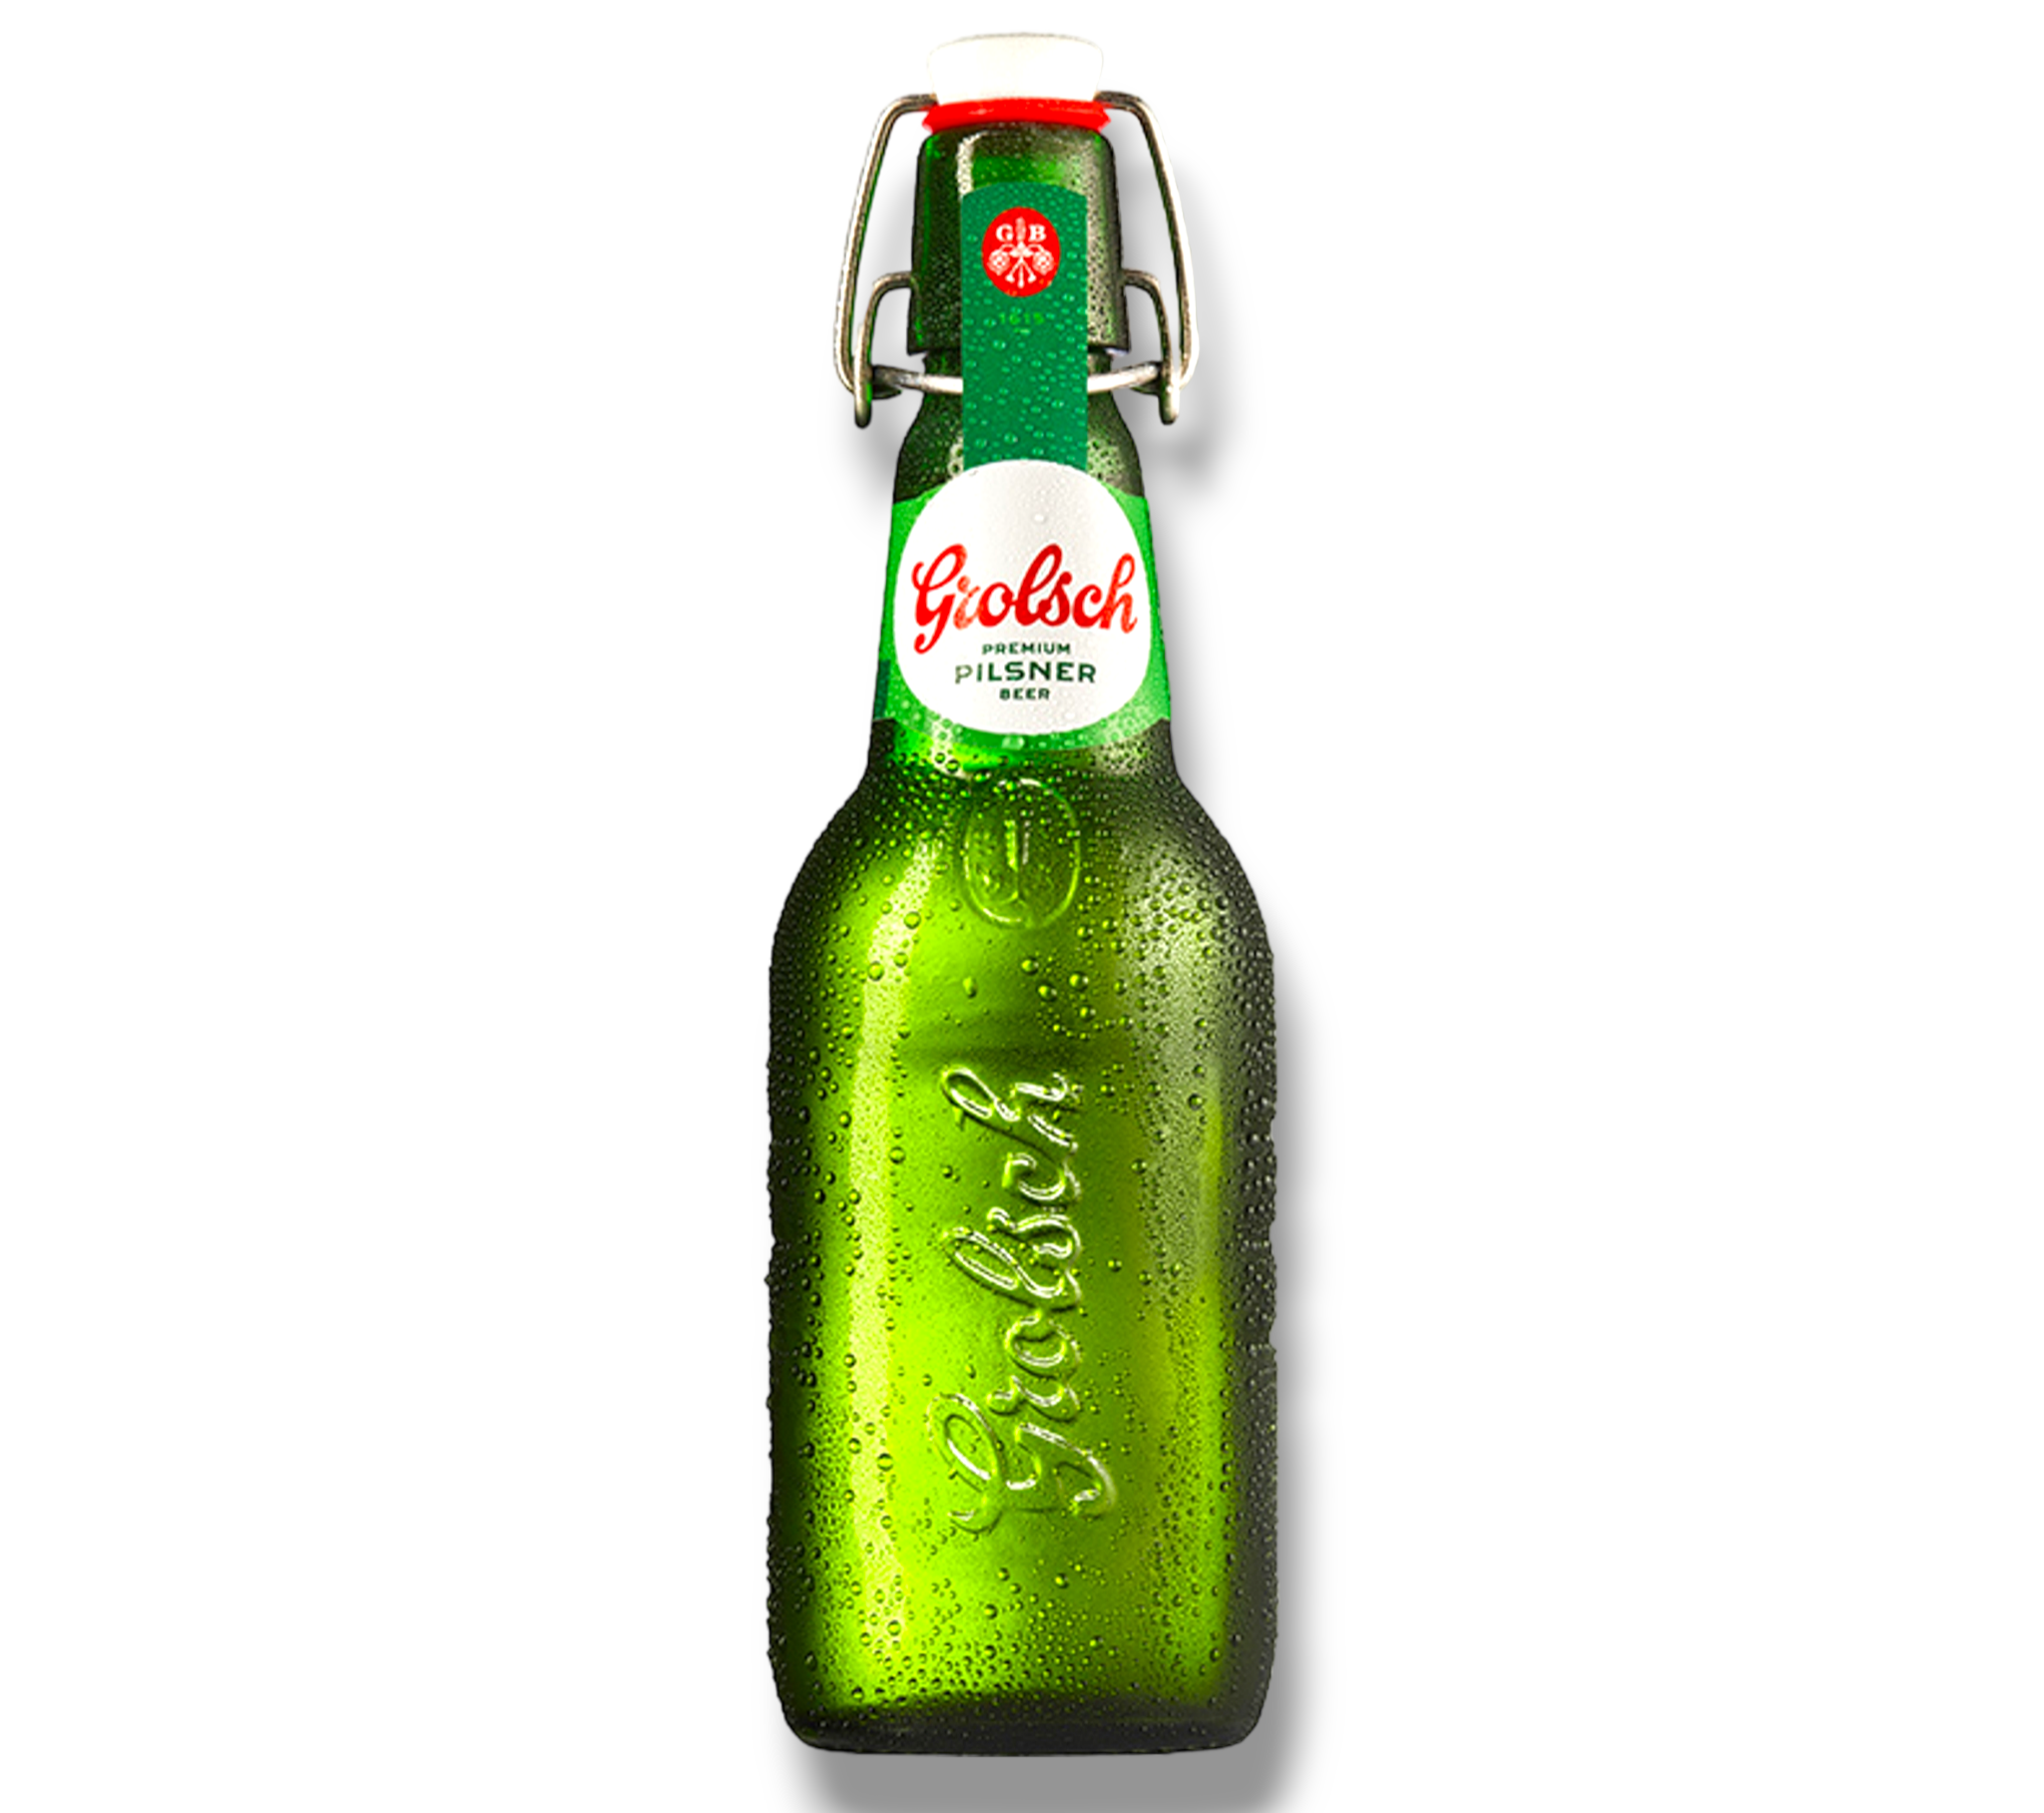 Grolsch Premium Pilsner Bier - Das Premium Bier aus den Niederlanden